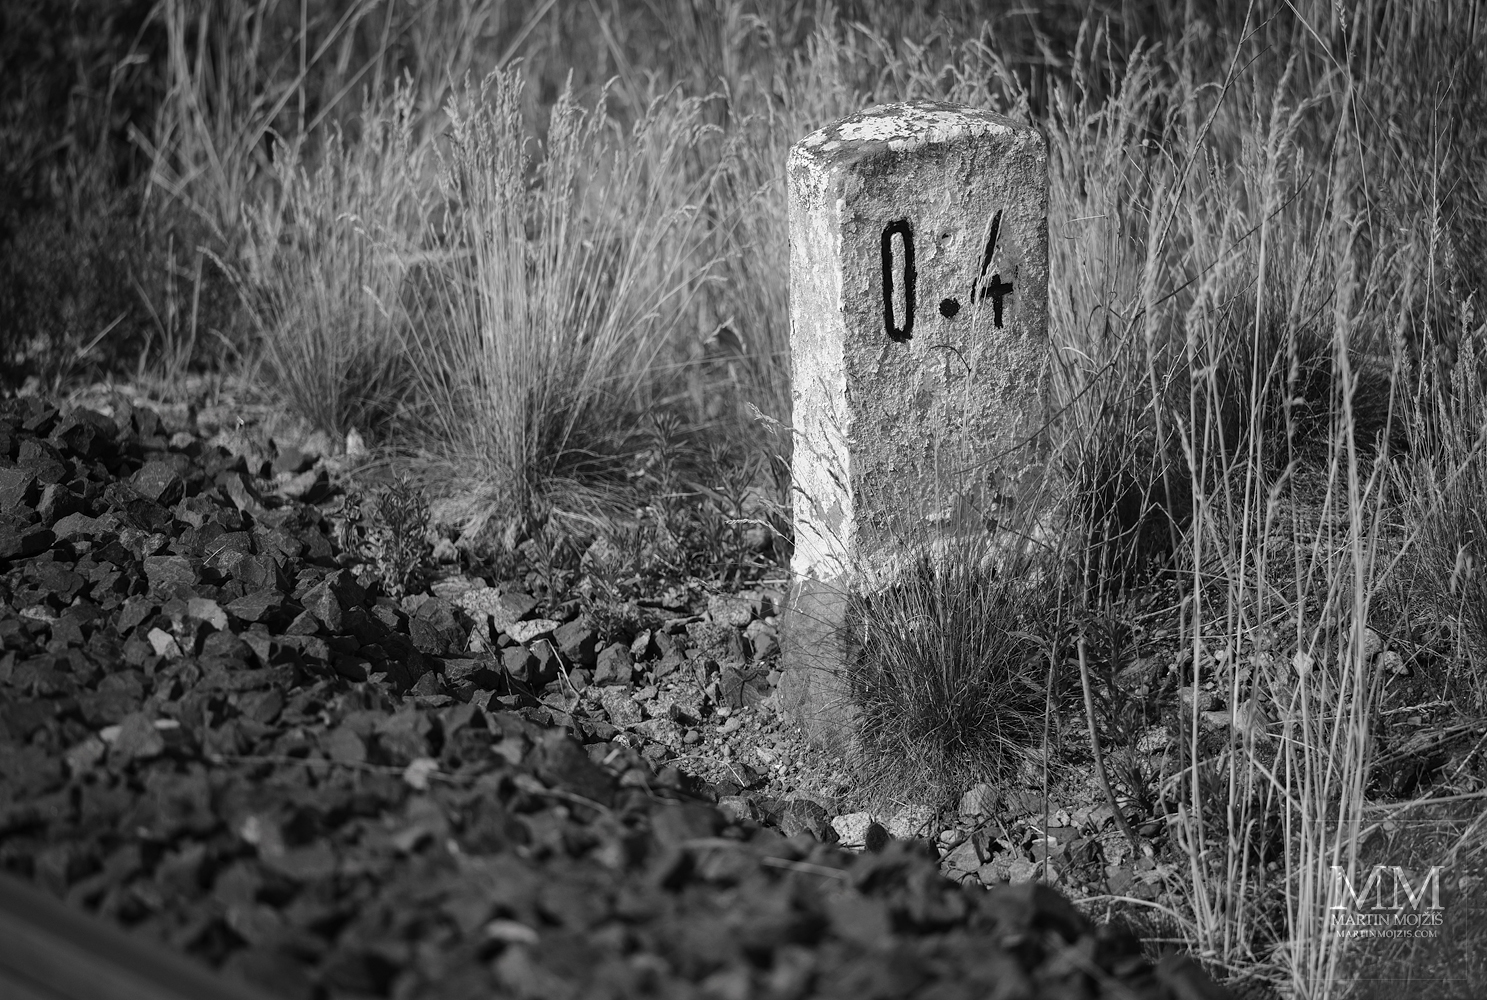 Železniční hektometrovník ve vysoké trávě. Umělecká černobílá fotografie s názvem V TRAVINÁCH III. Fotograf Martin Mojžíš.